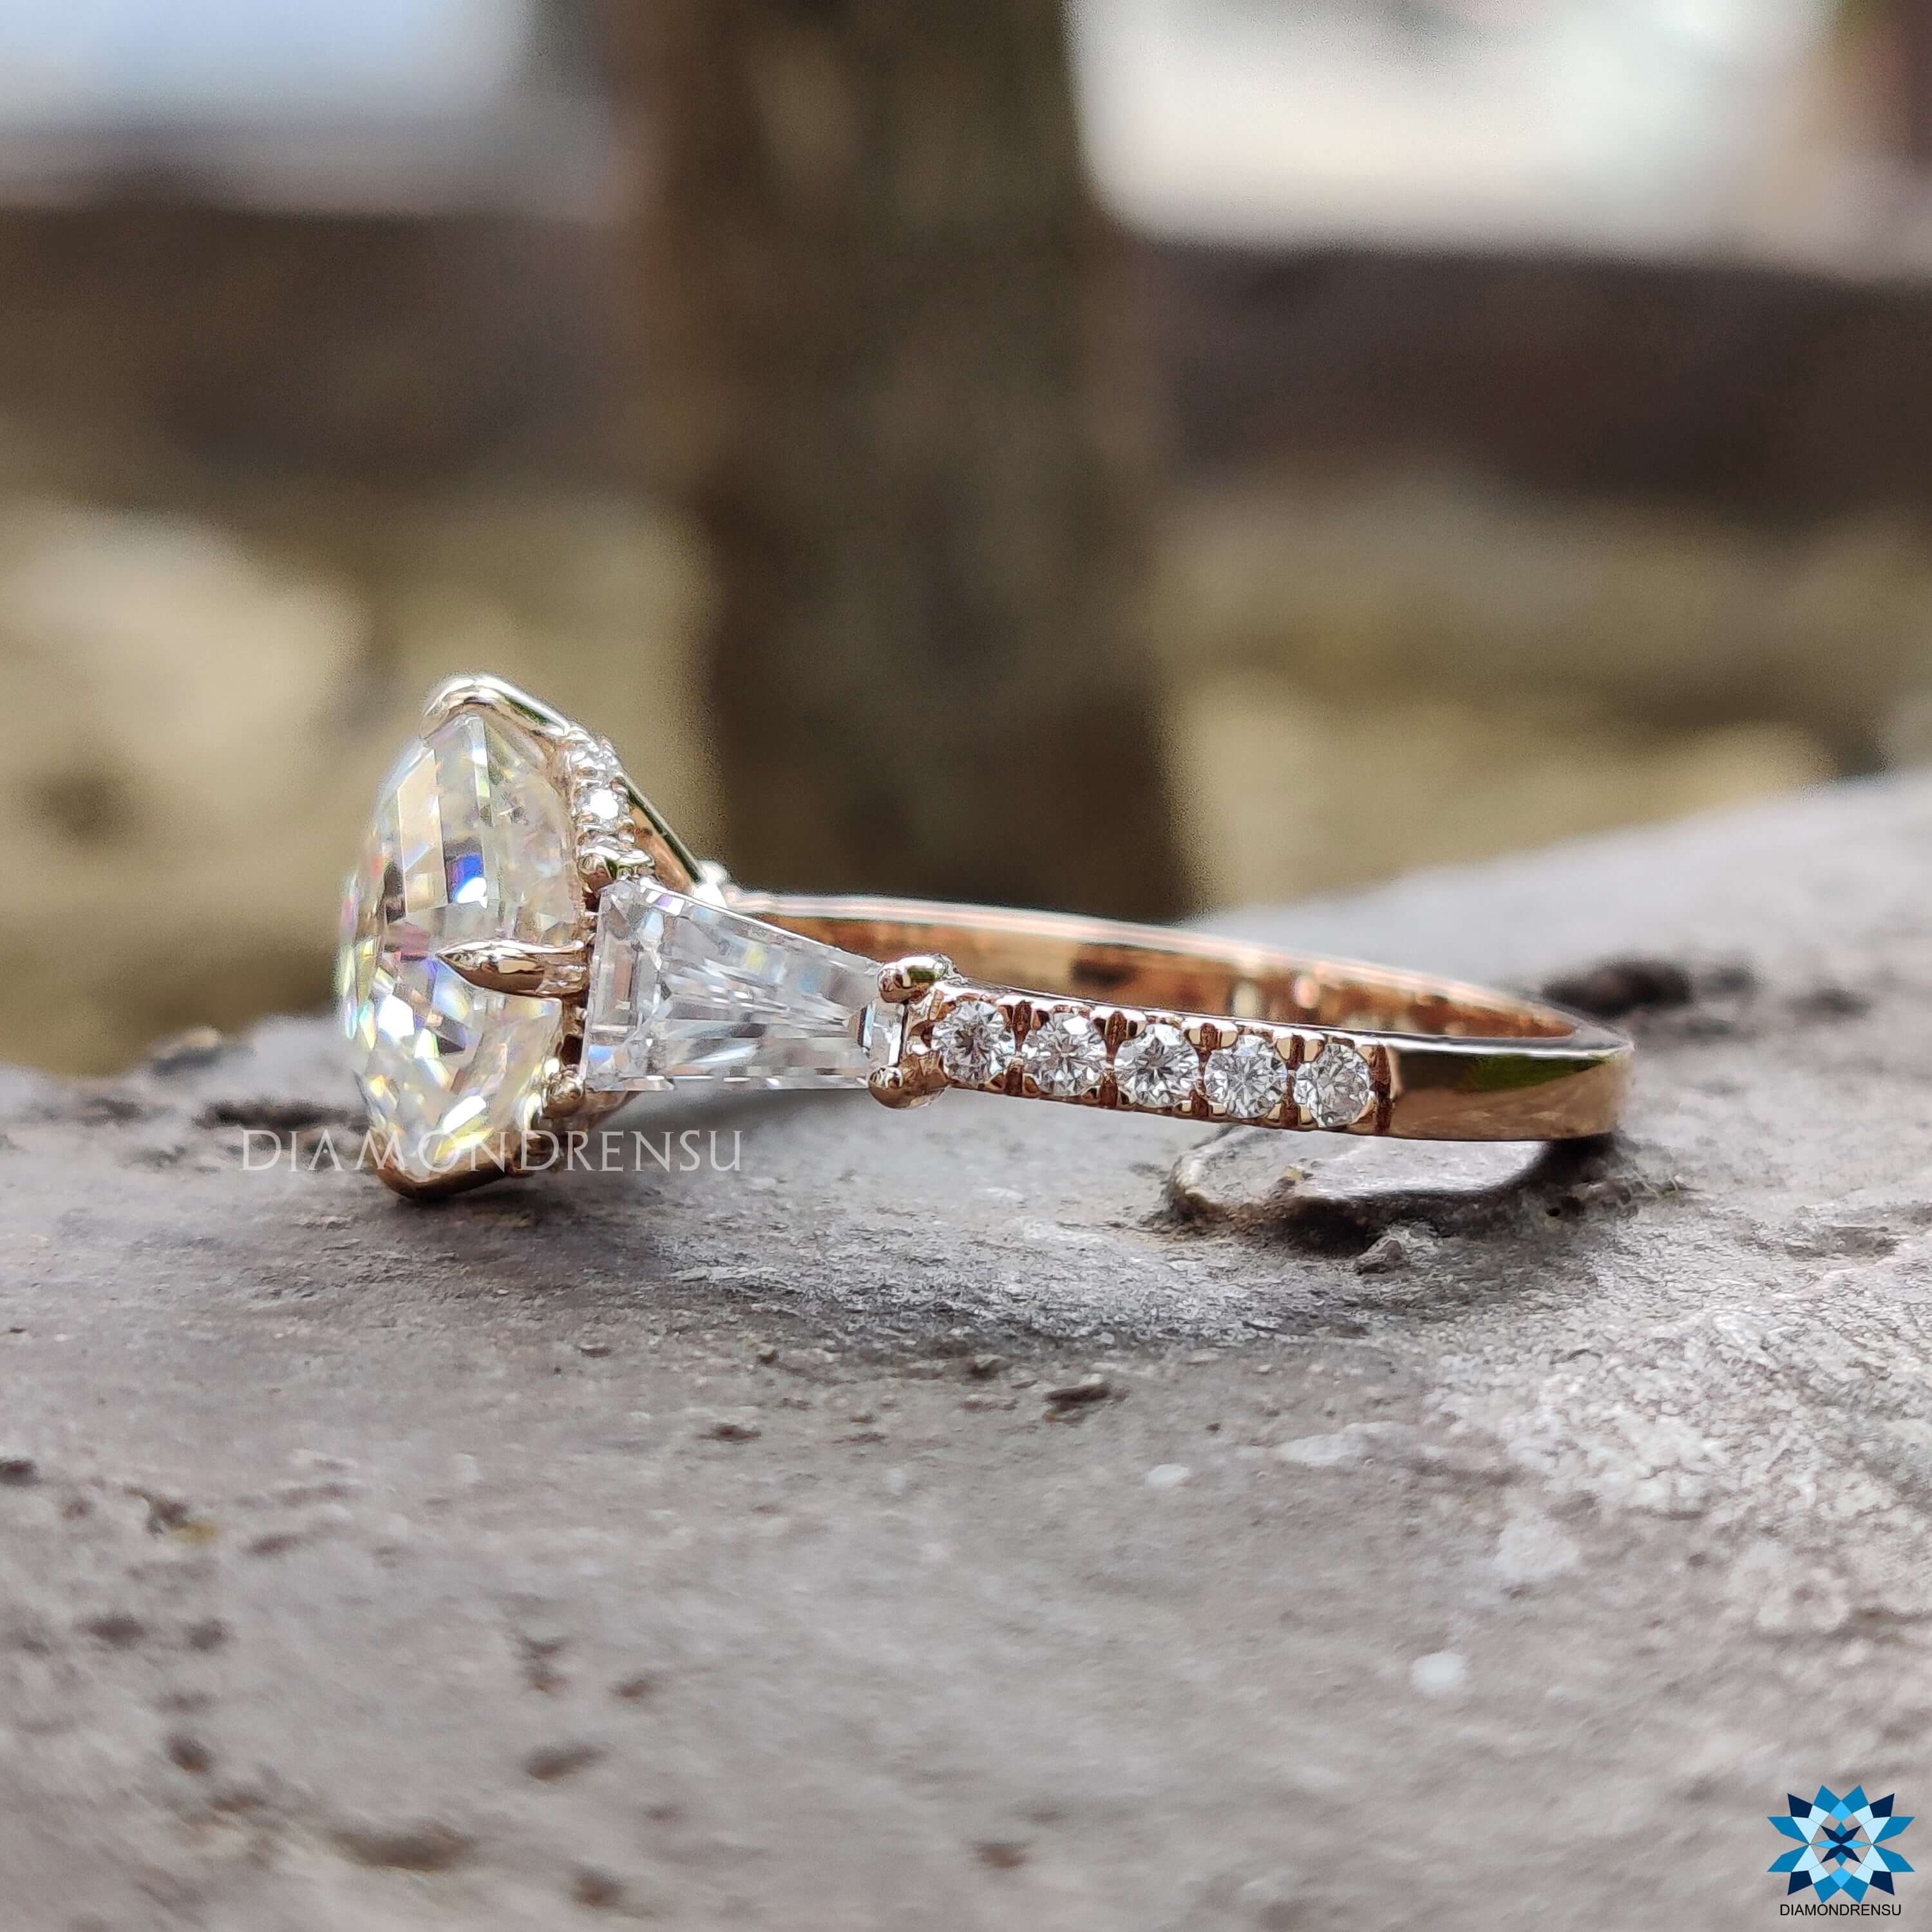 custom moissanite jewelry - diamondrensu